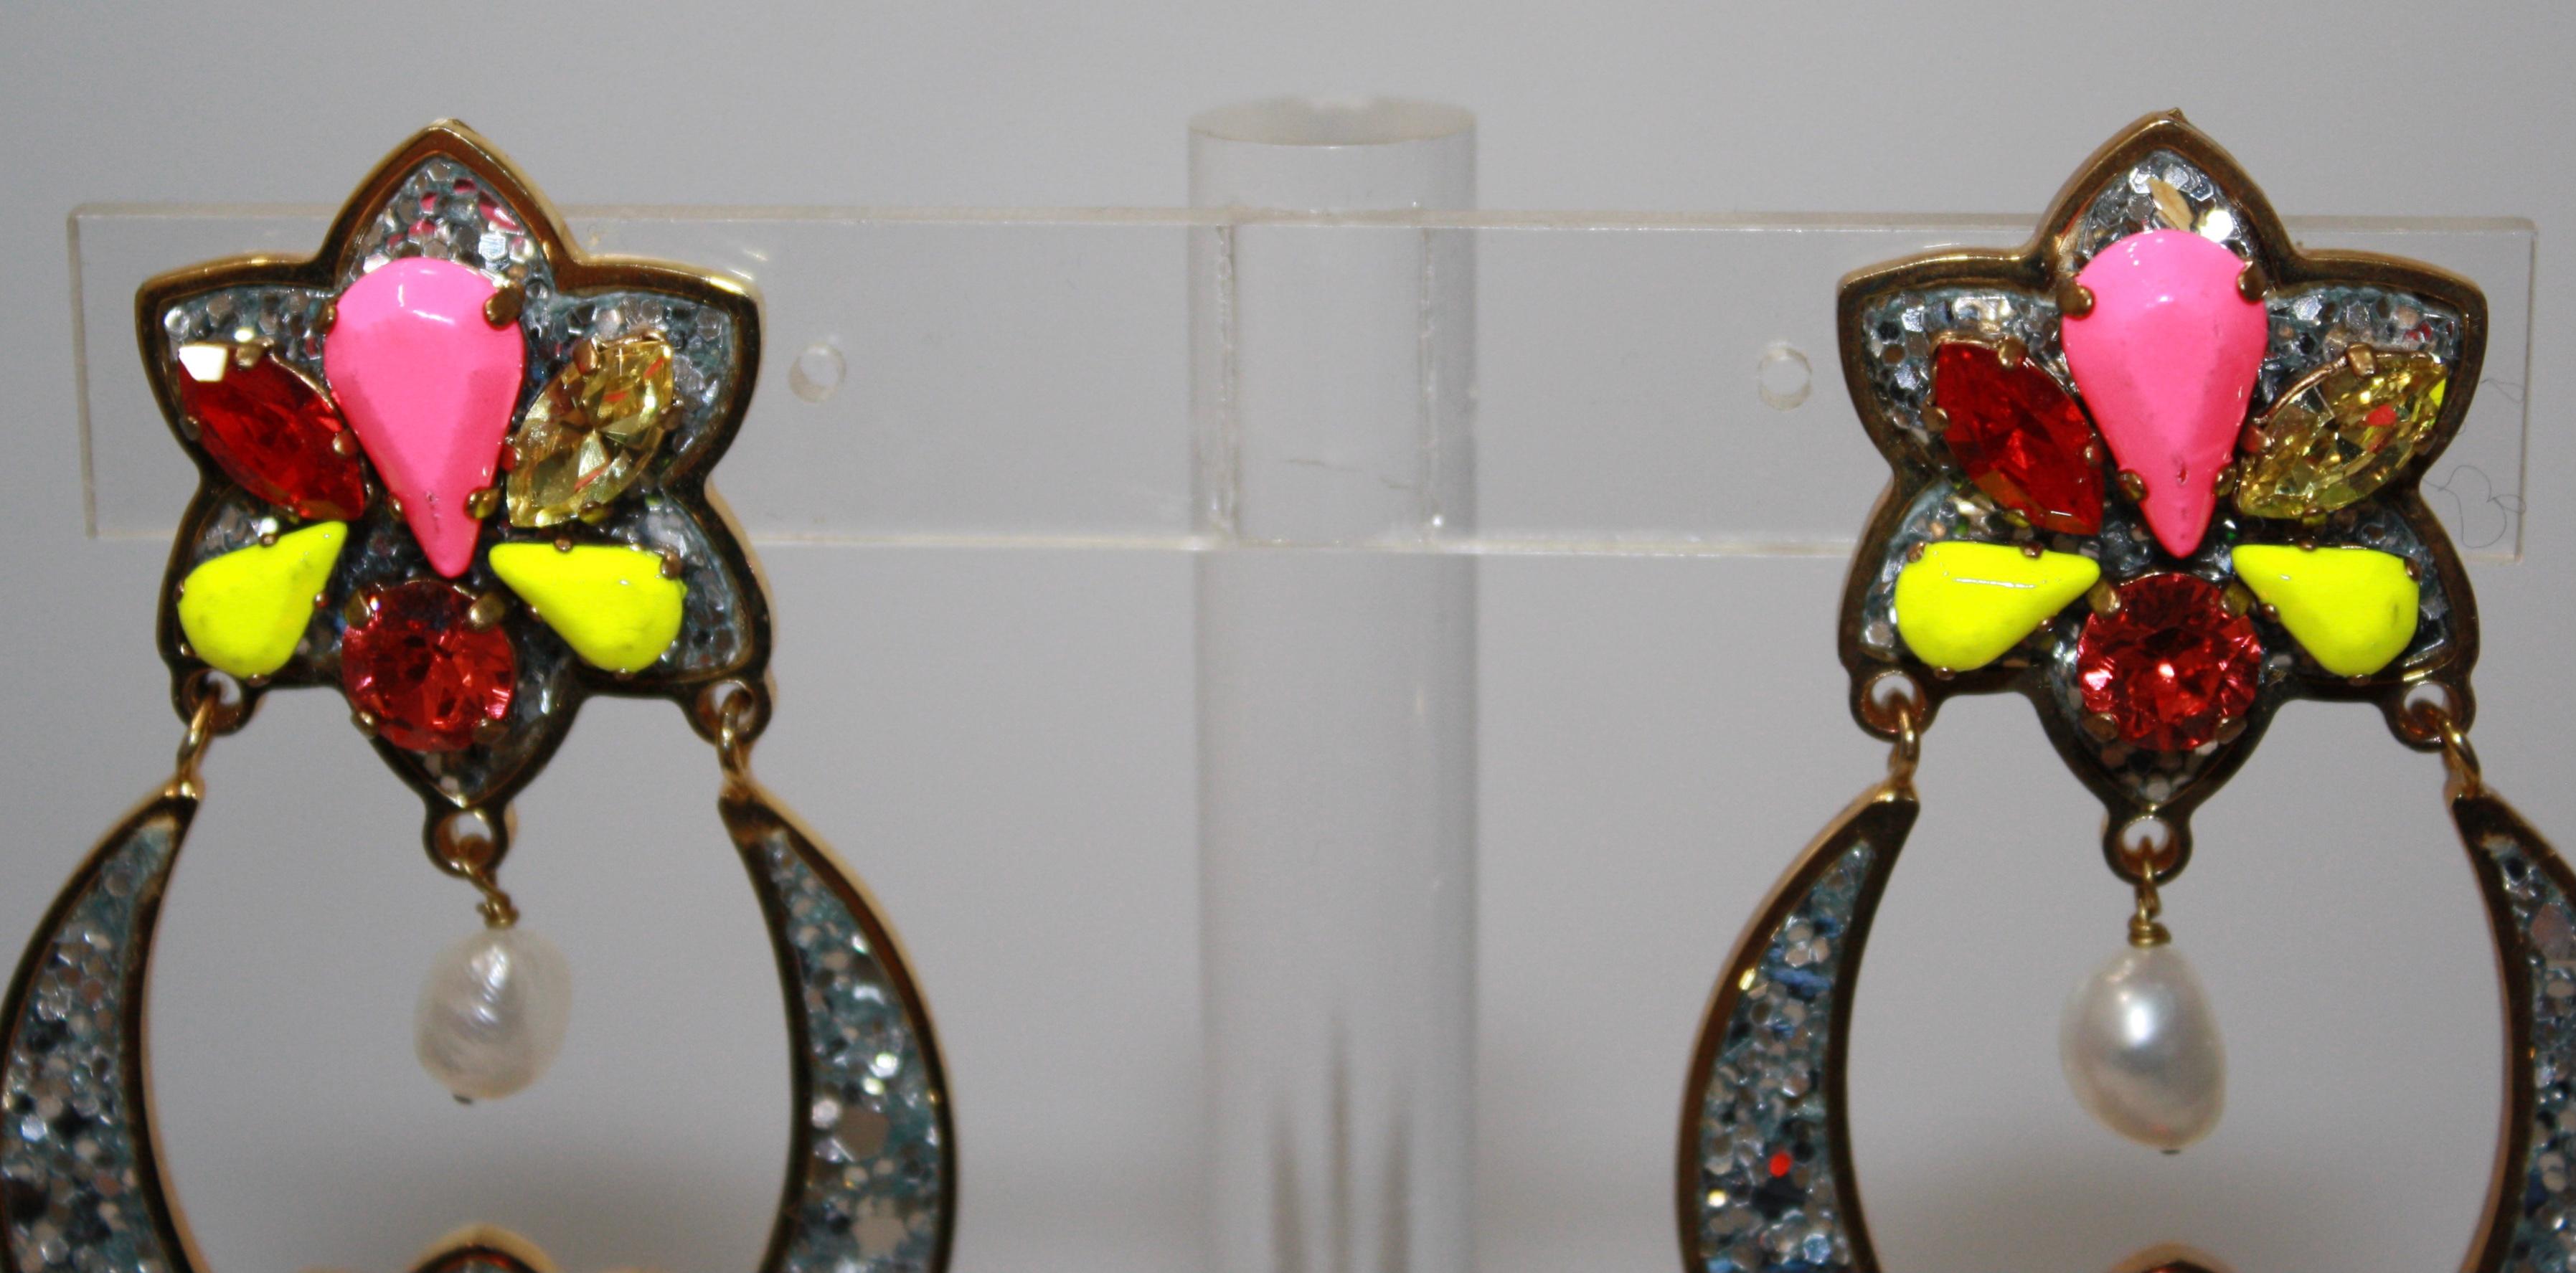 Modern Shourouk Glitter Drop Earrings For Sale